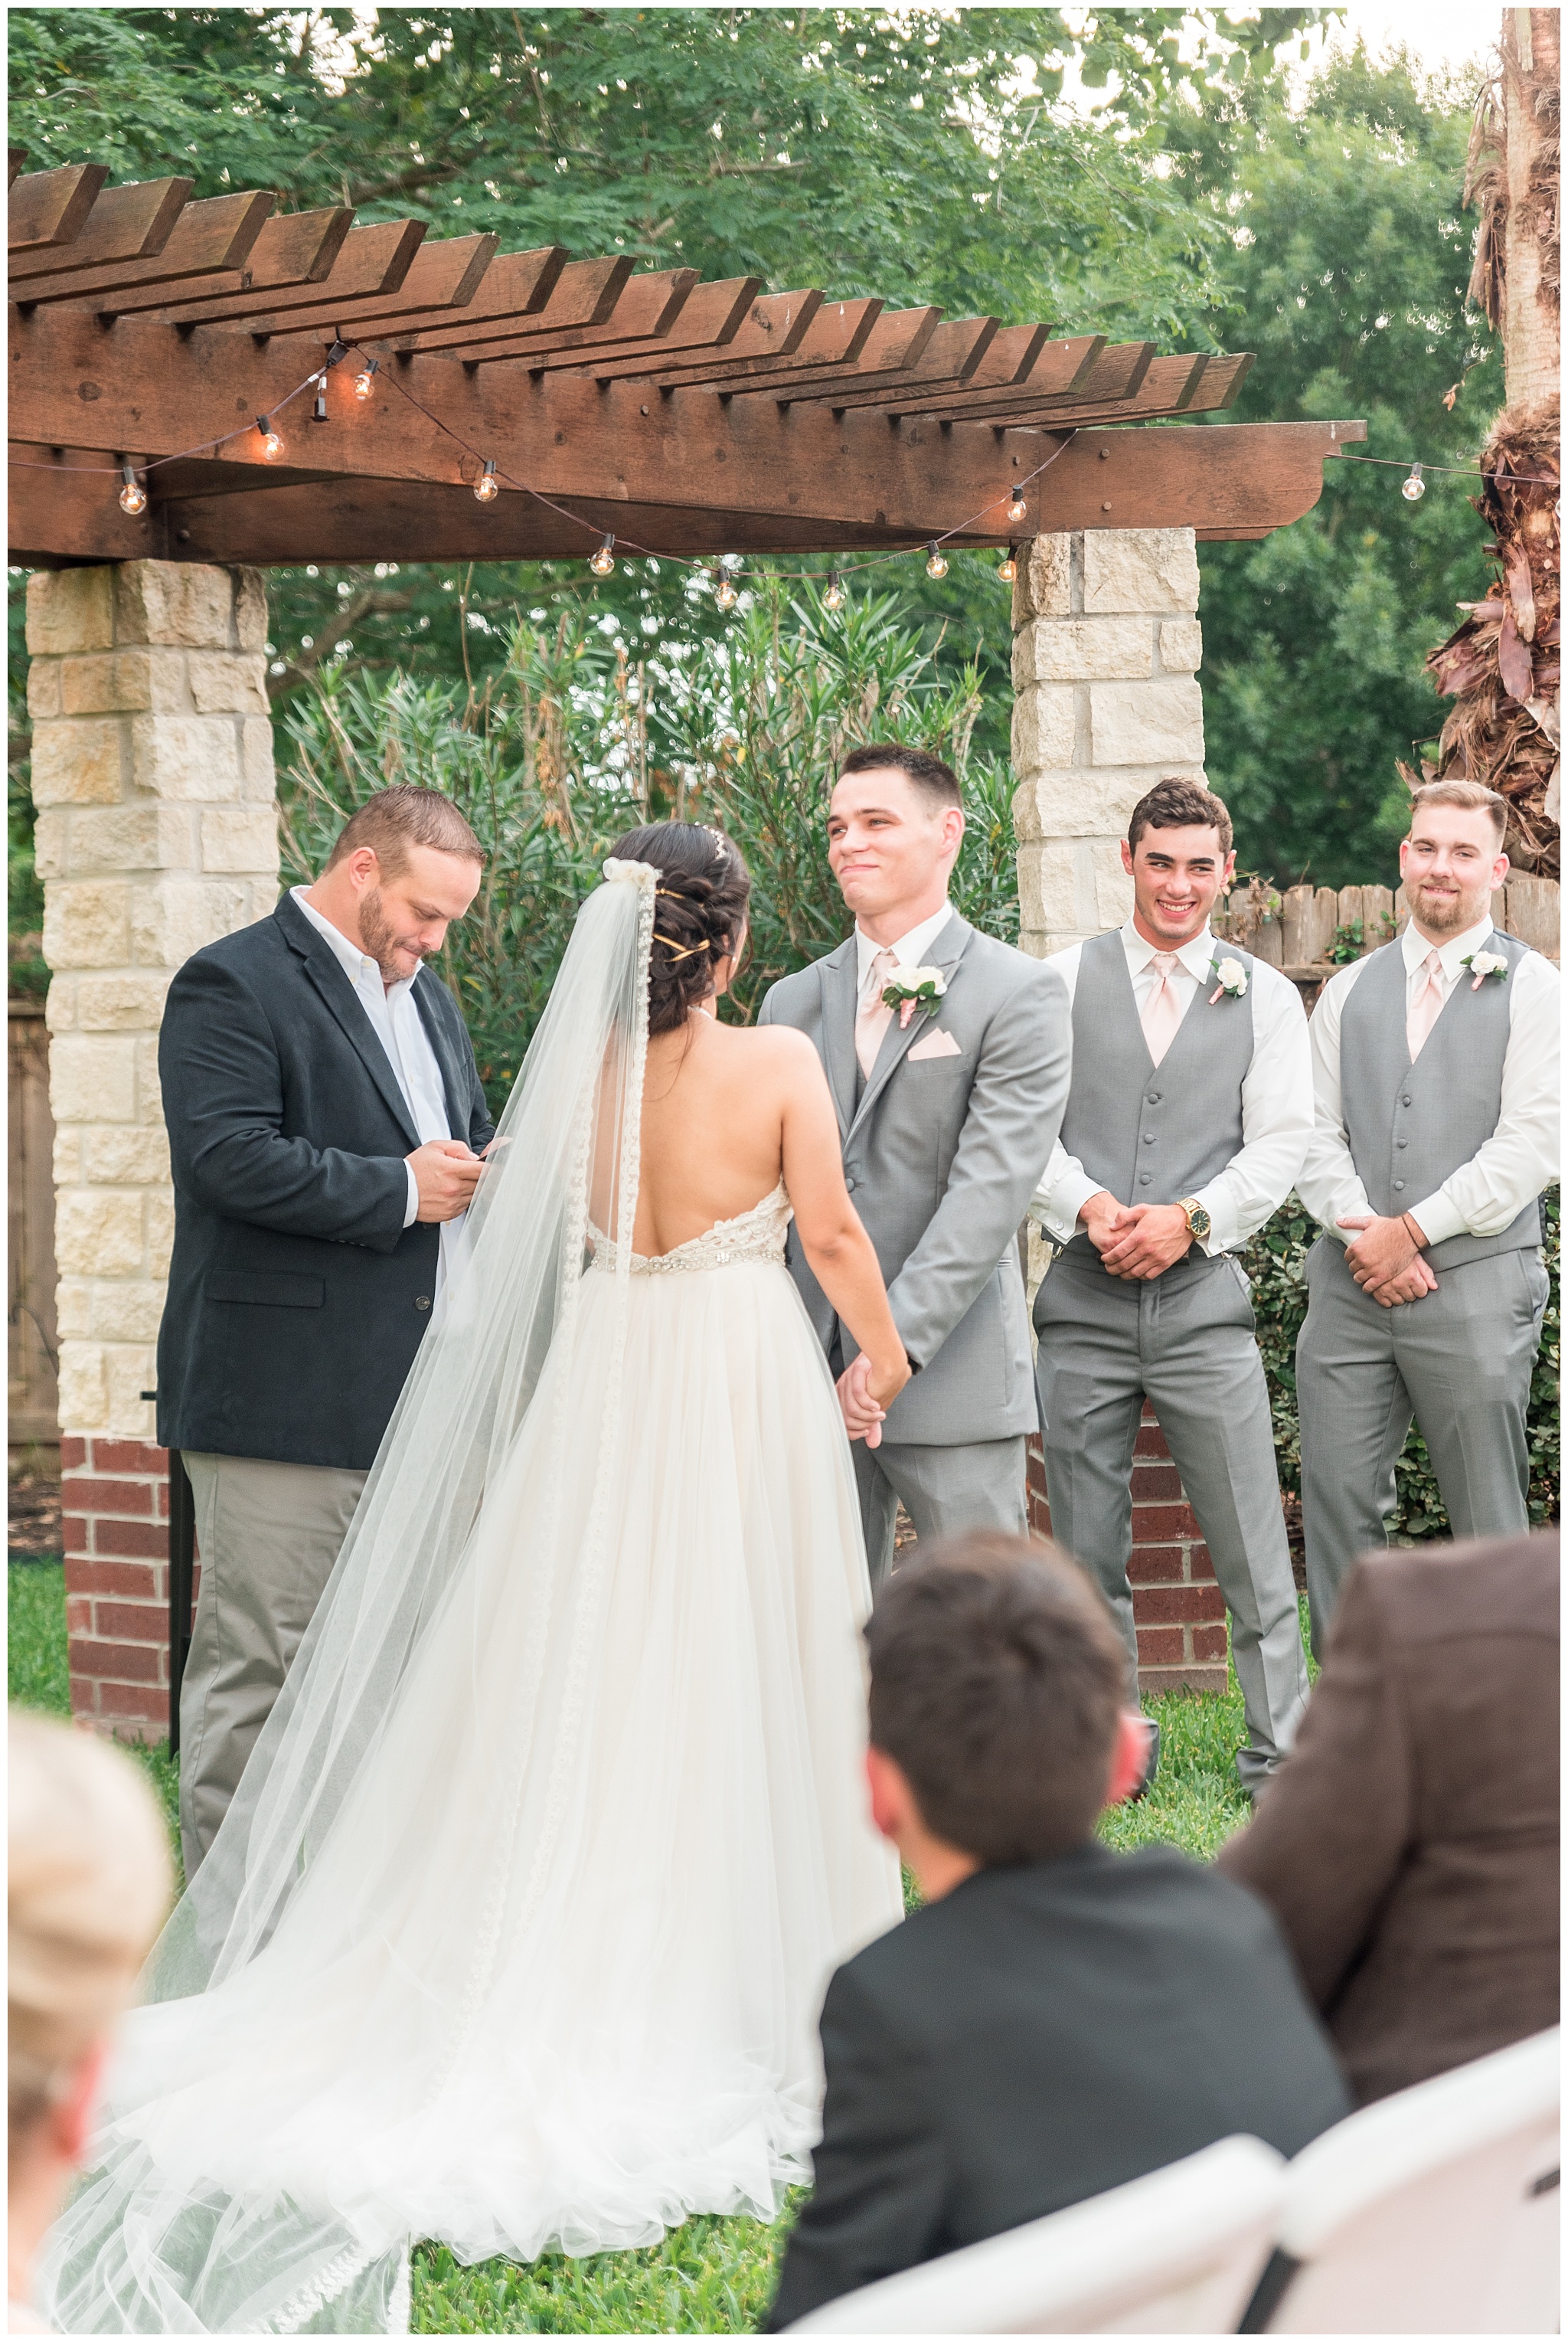 Joyful and Intimate Backyard Wedding Cypress Texas-2017-06-14_0015